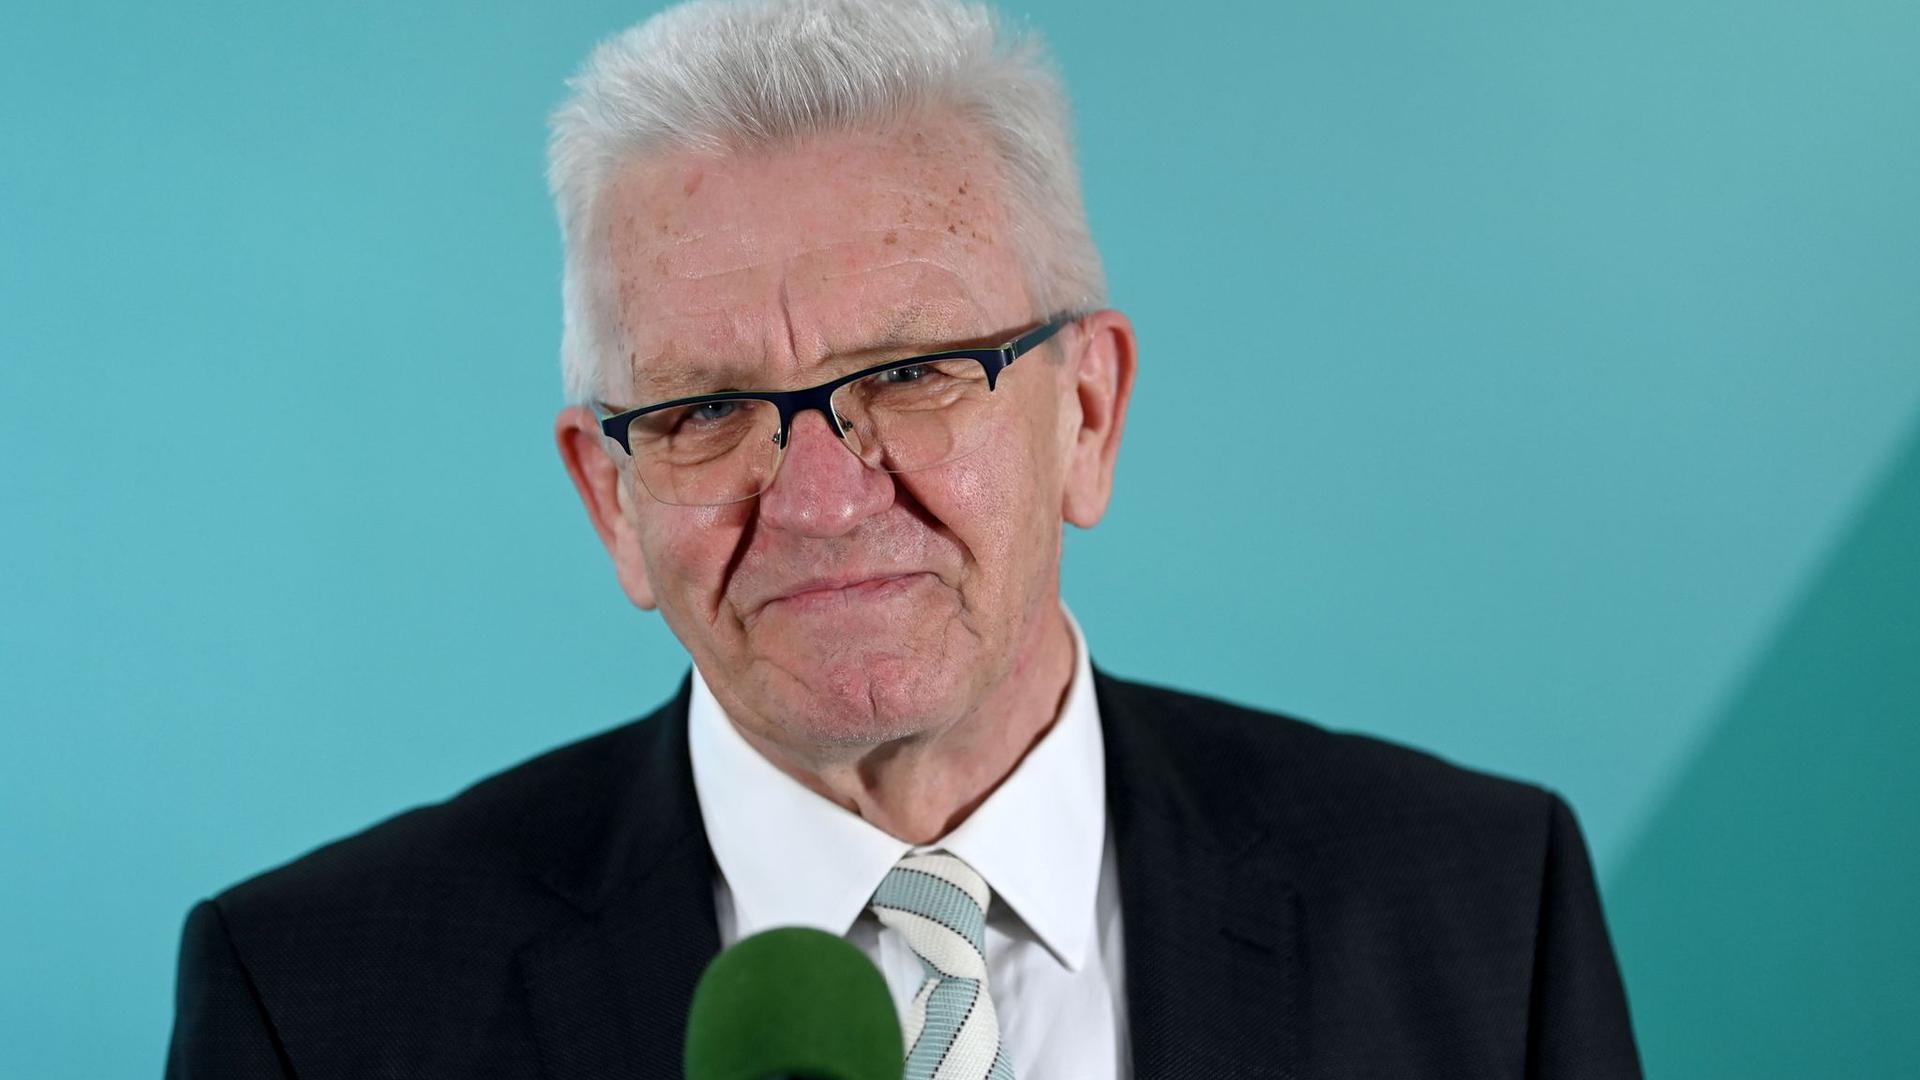 Winfried Kretschmann (Bündnis 90/Die Grünen), Ministerpräsident von Baden-Württemberg und Spitzenkandidat der Grünen, äußert sich im Haus der Abgeordneten zum Ergebnis der Landtagswahlen in Baden-Württemberg.